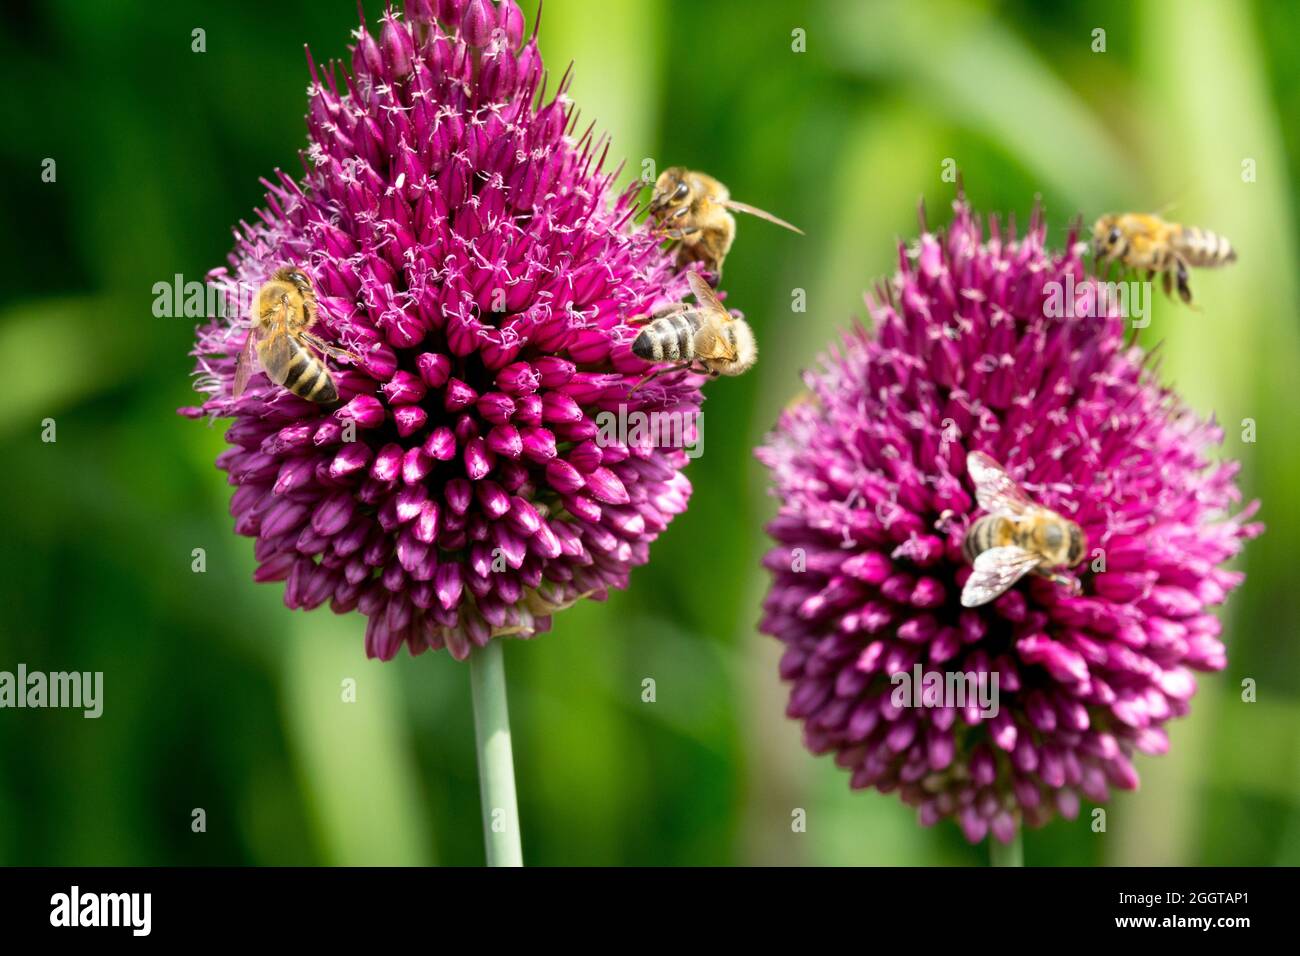 Europäische Honigbienen Blume Drumstick Zwiebelblüten Allium sphaerocephalon Honigbiene Allium Blumen Bienenfreundliche Pflanzen Bienen Bestäubung, Trommelstöcke Bienen Stockfoto